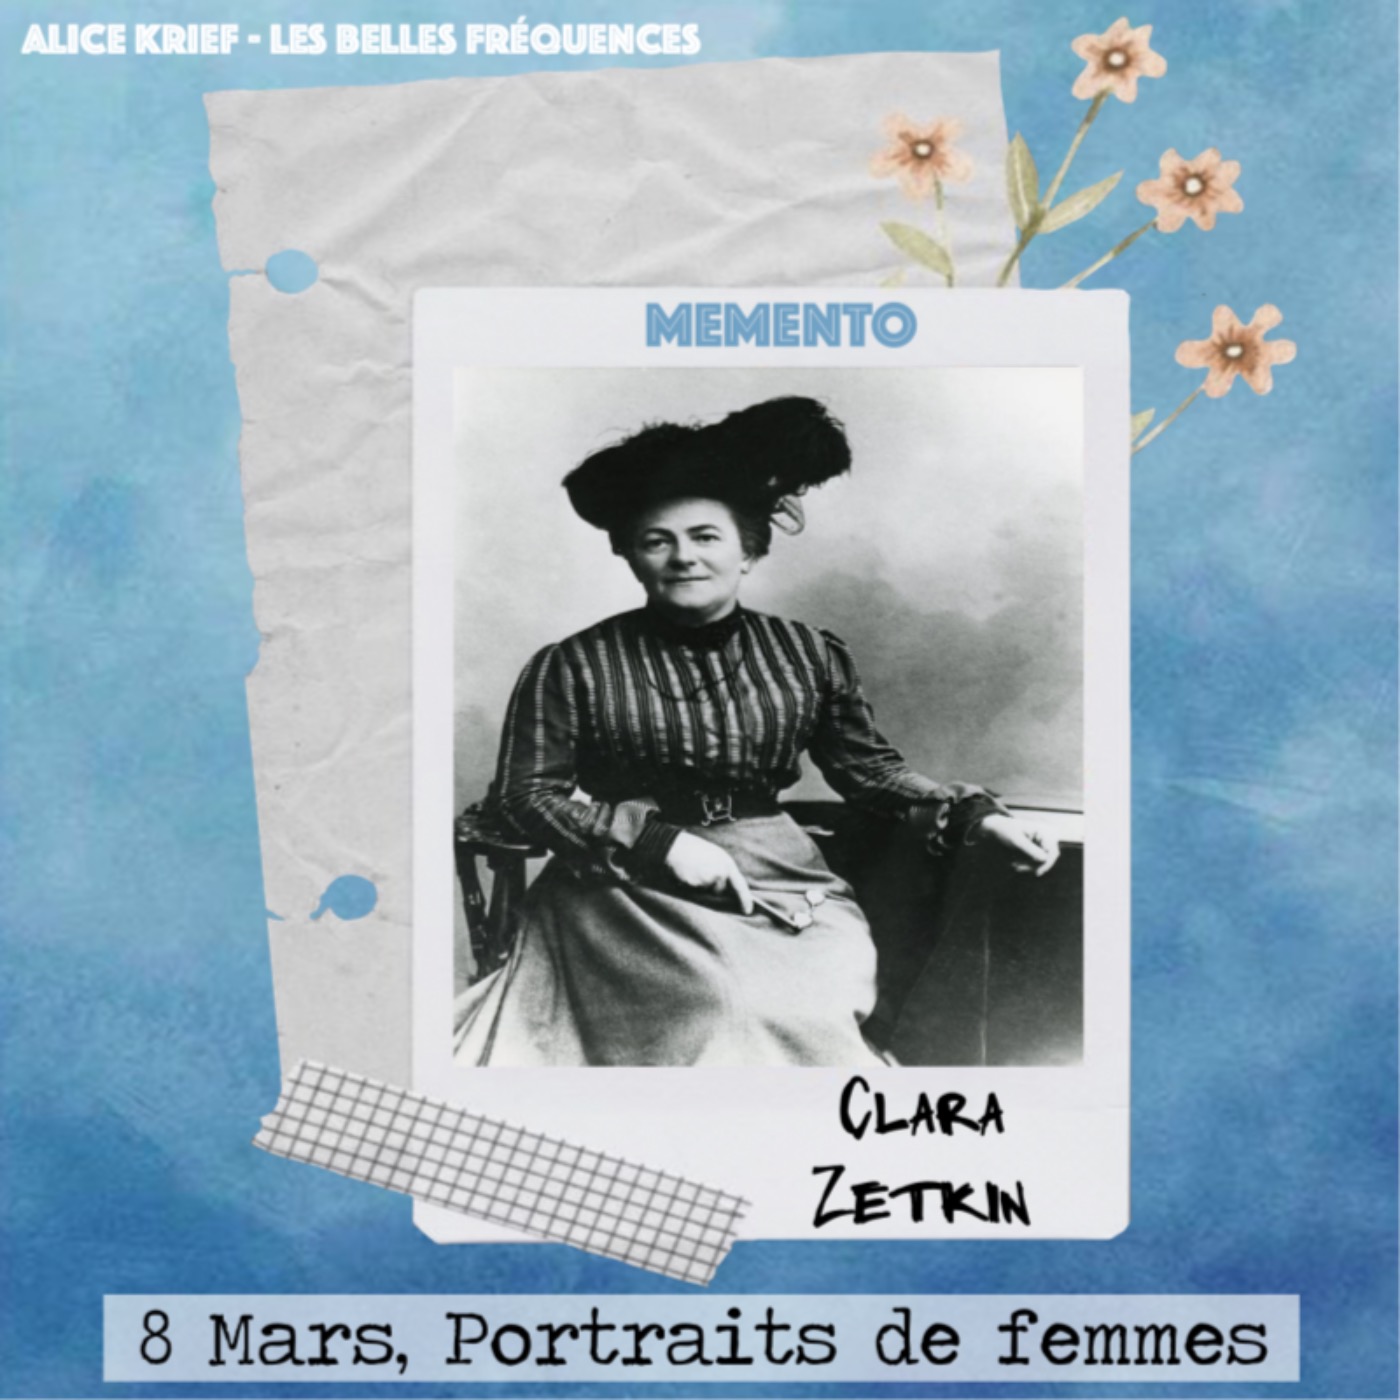 [8 MARS, PORTRAITS DE FEMMES] Clara Zetkin - Je propose la création de la Journée internationale des femmes